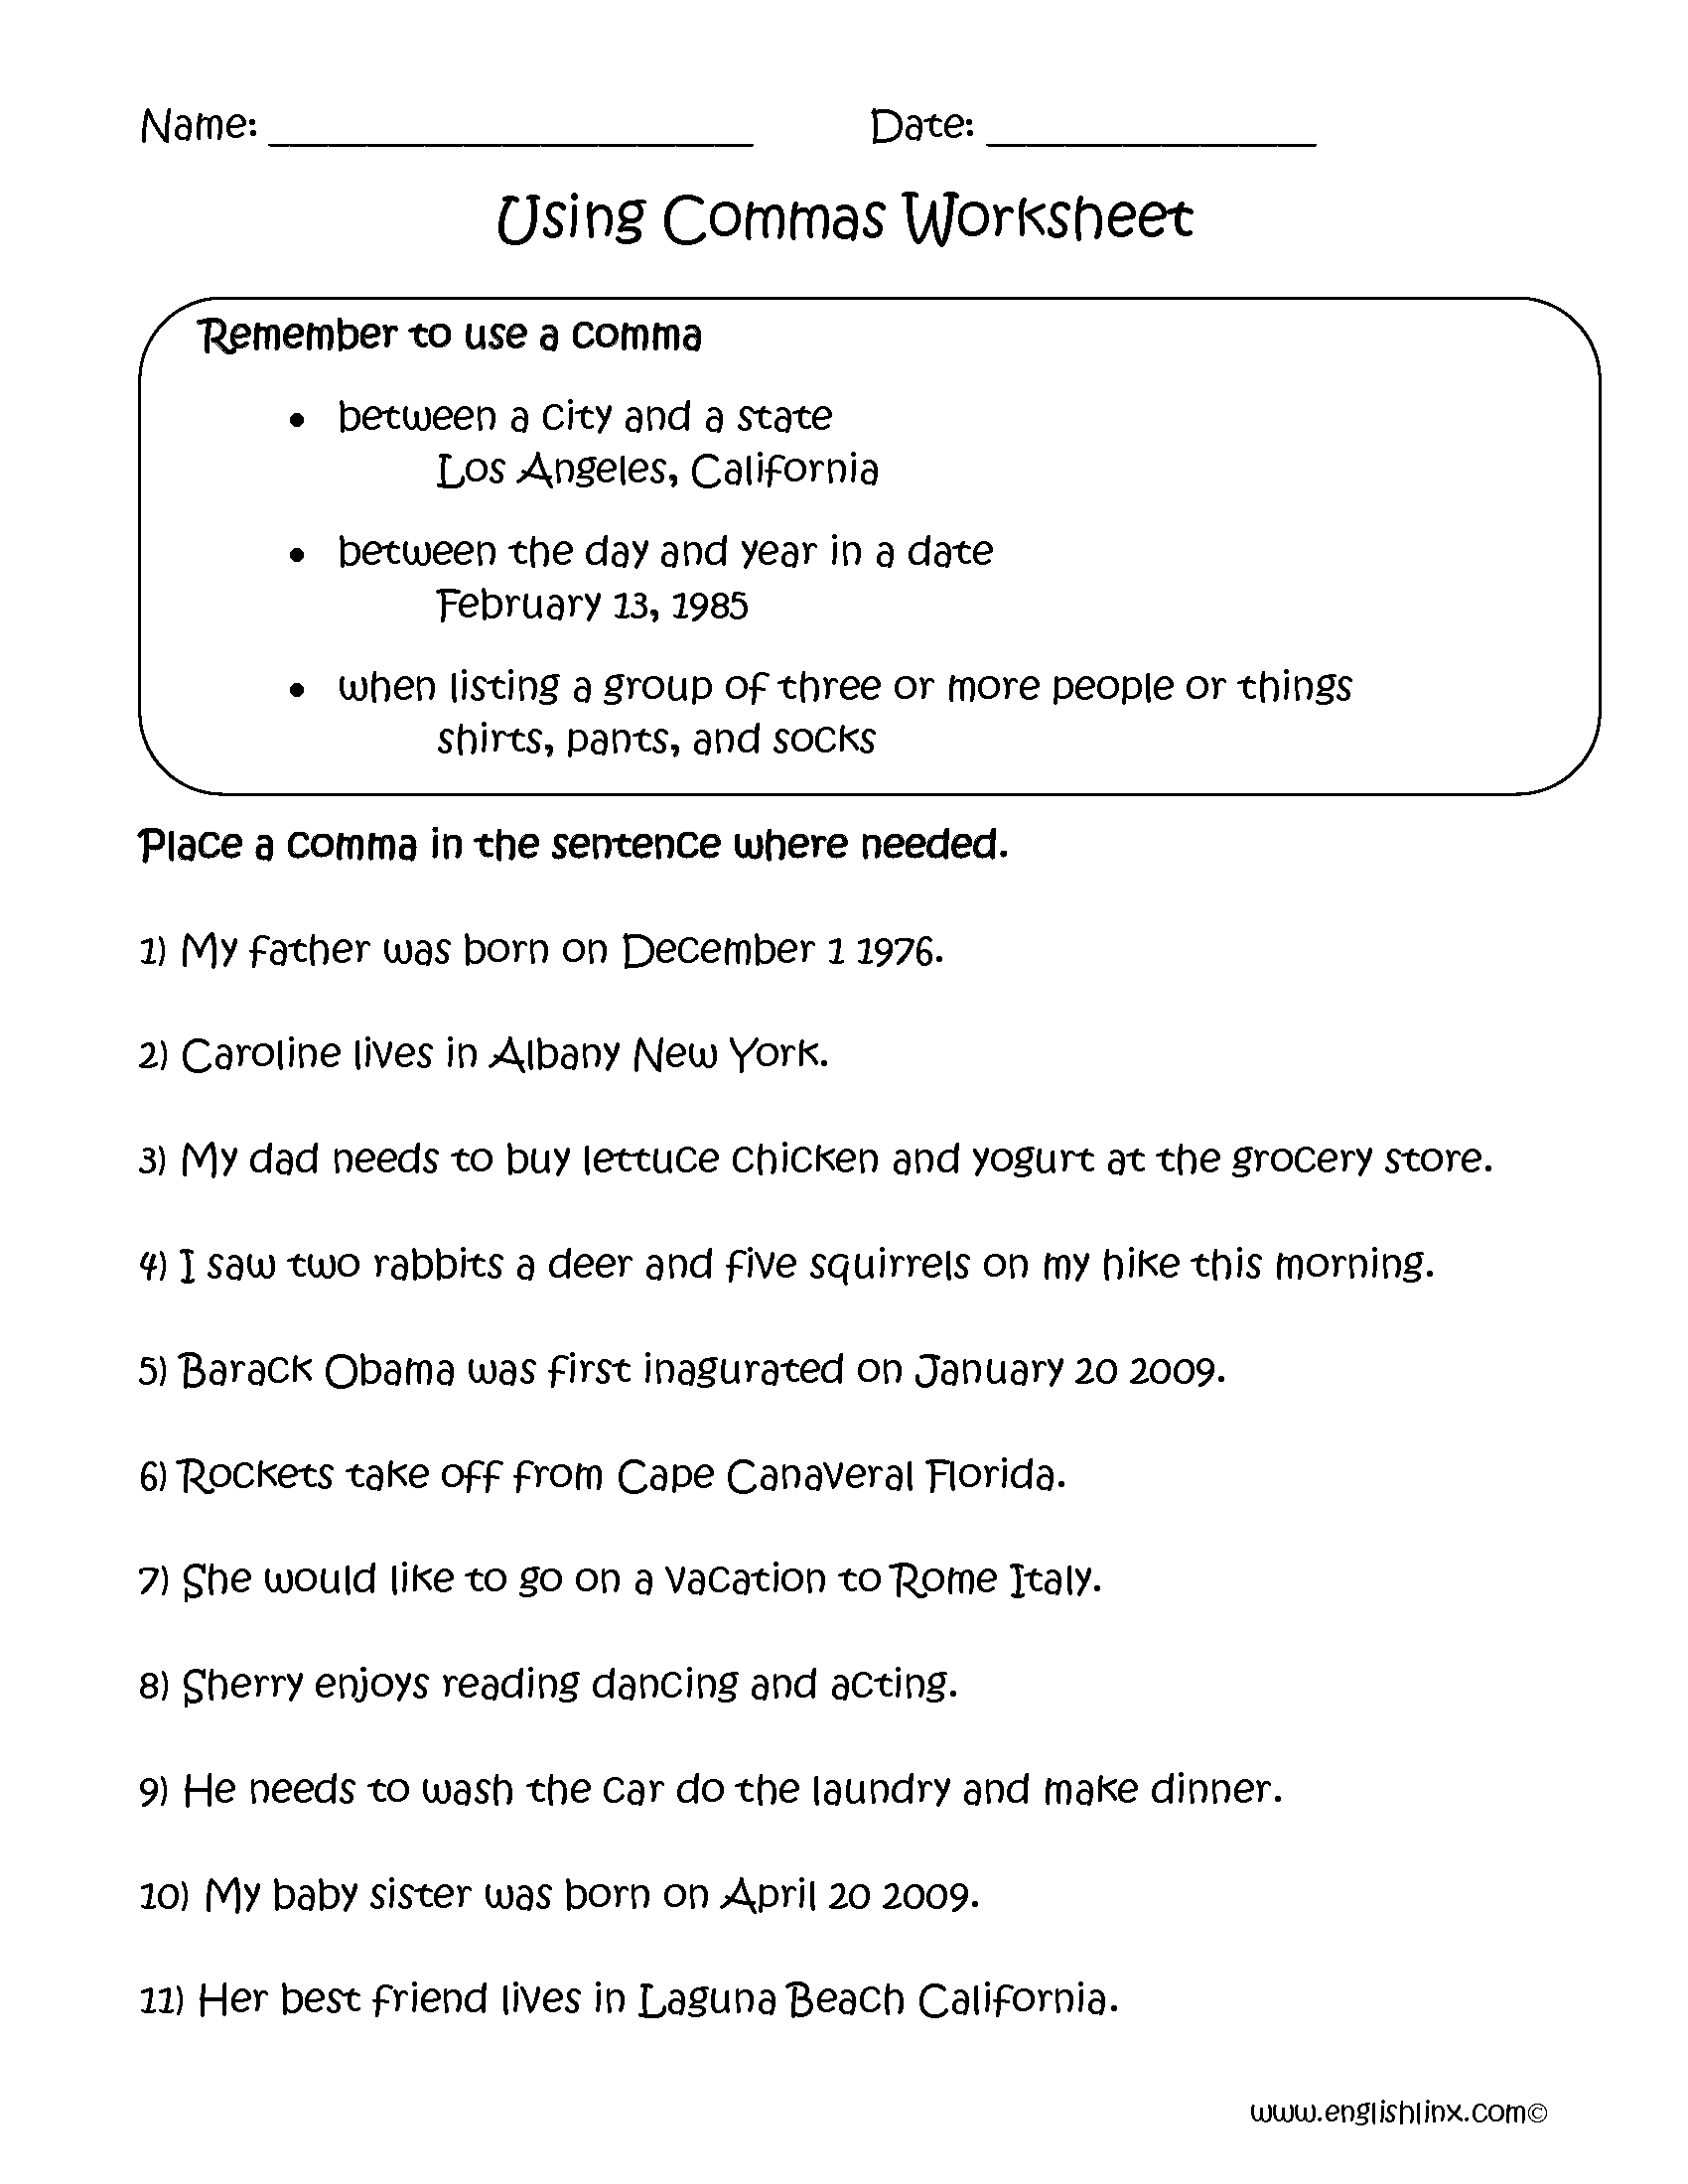 commas-in-series-worksheet